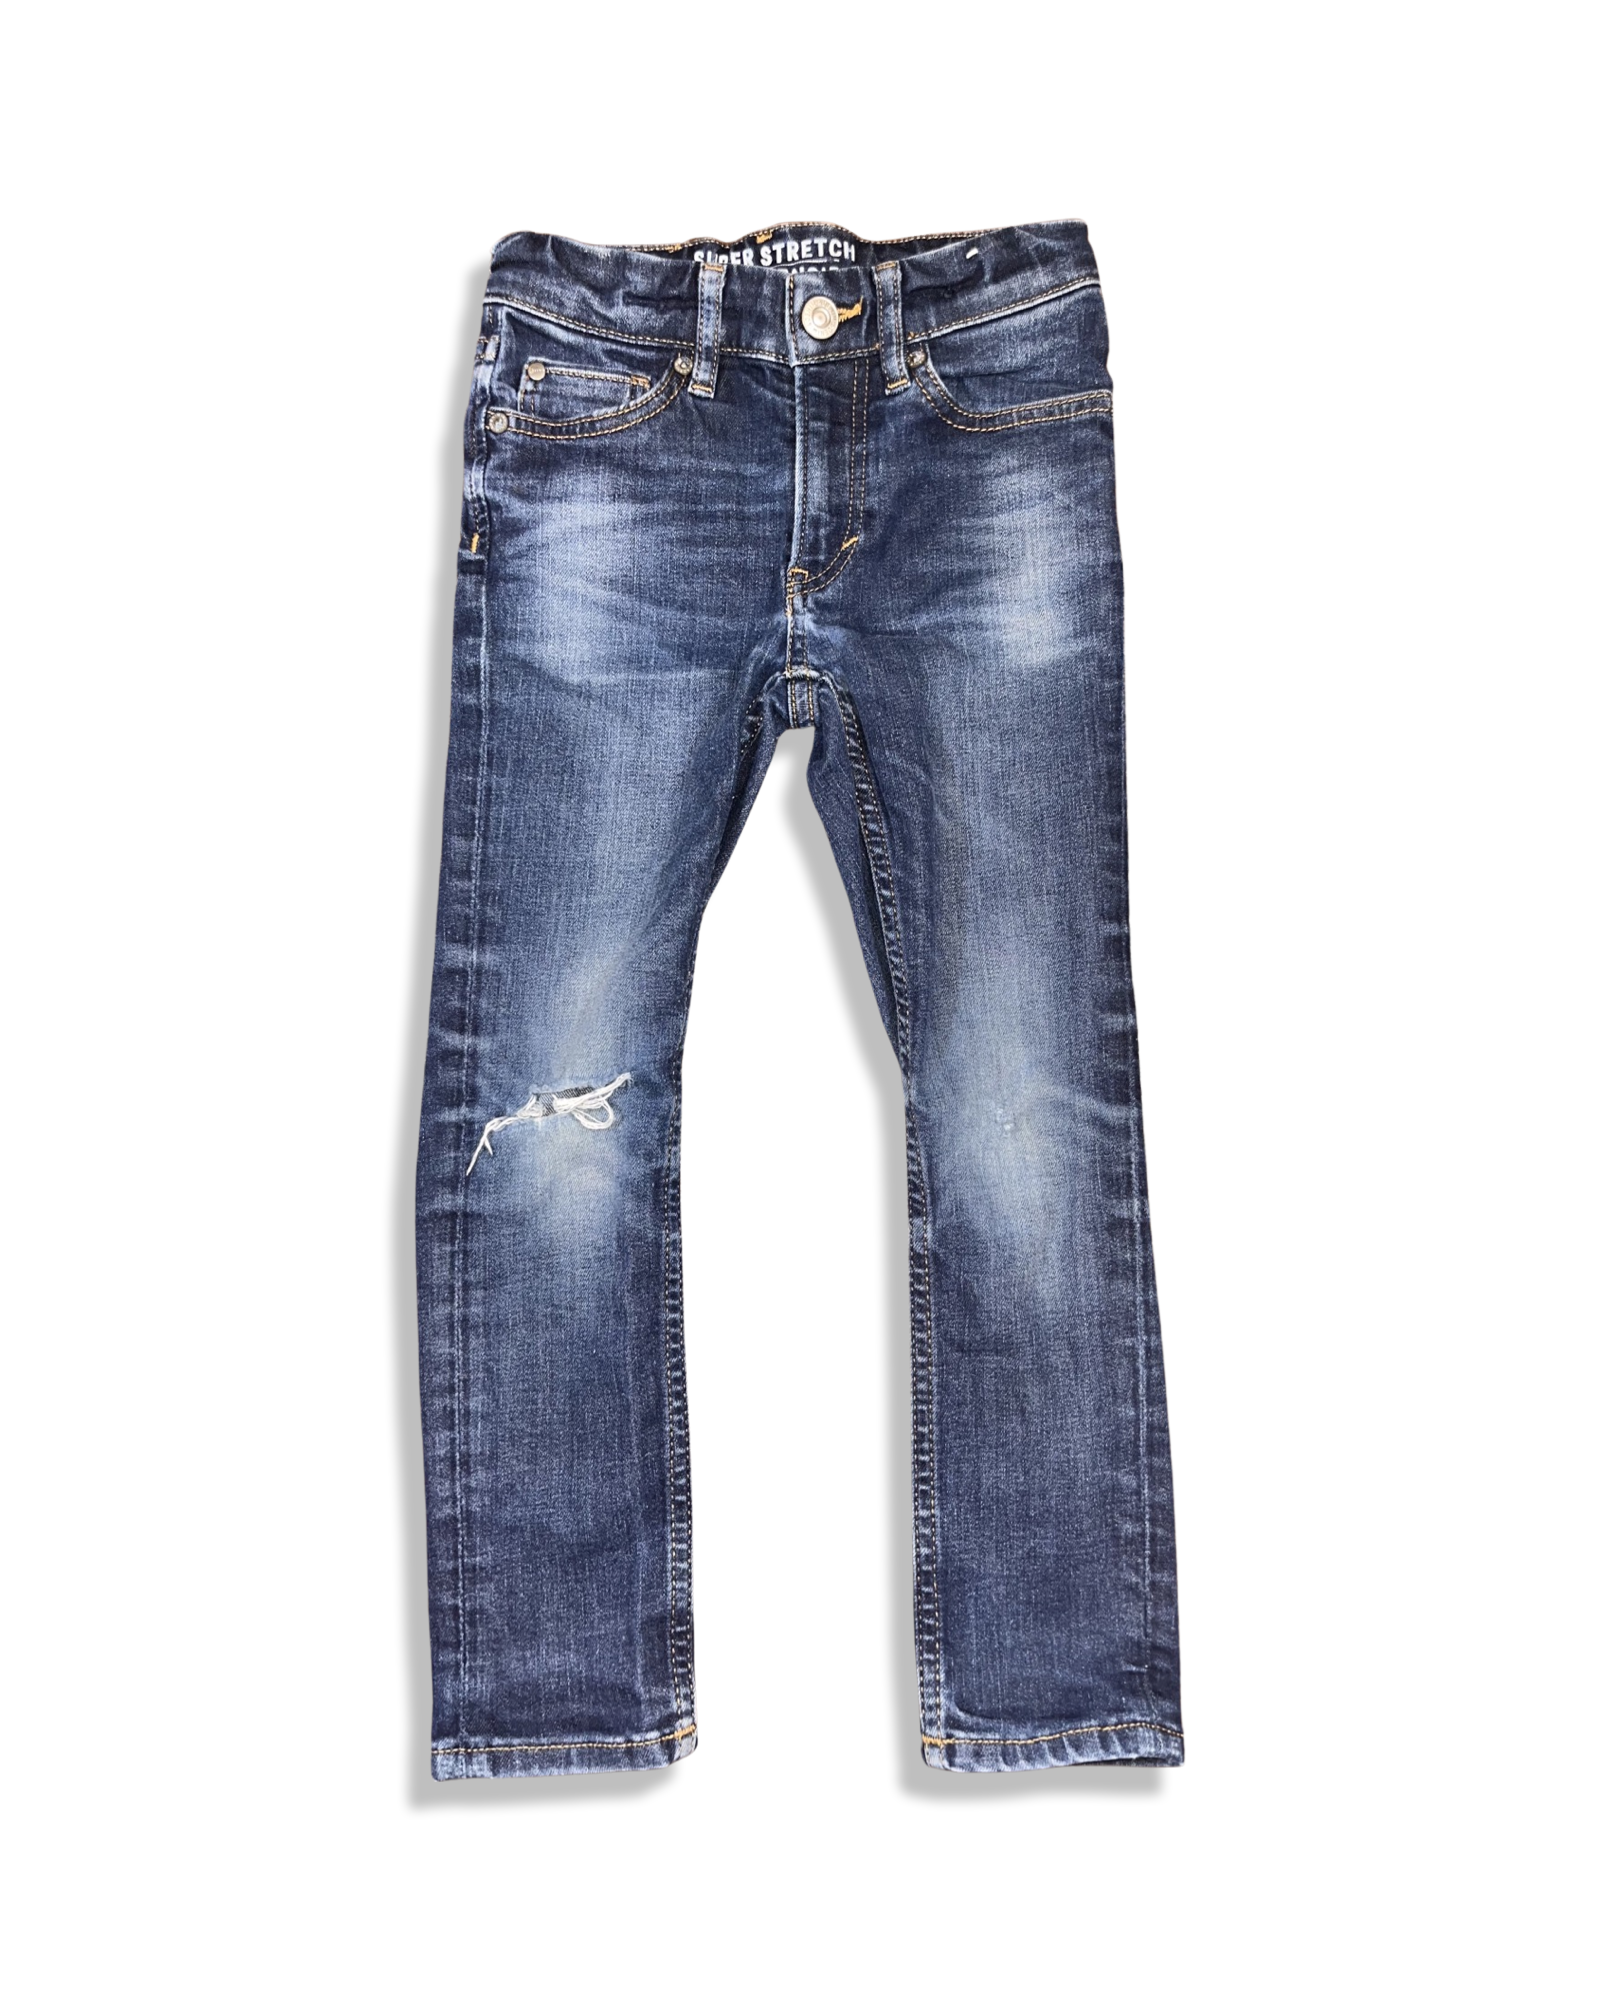 Super Stretch Jeans (4-5T)